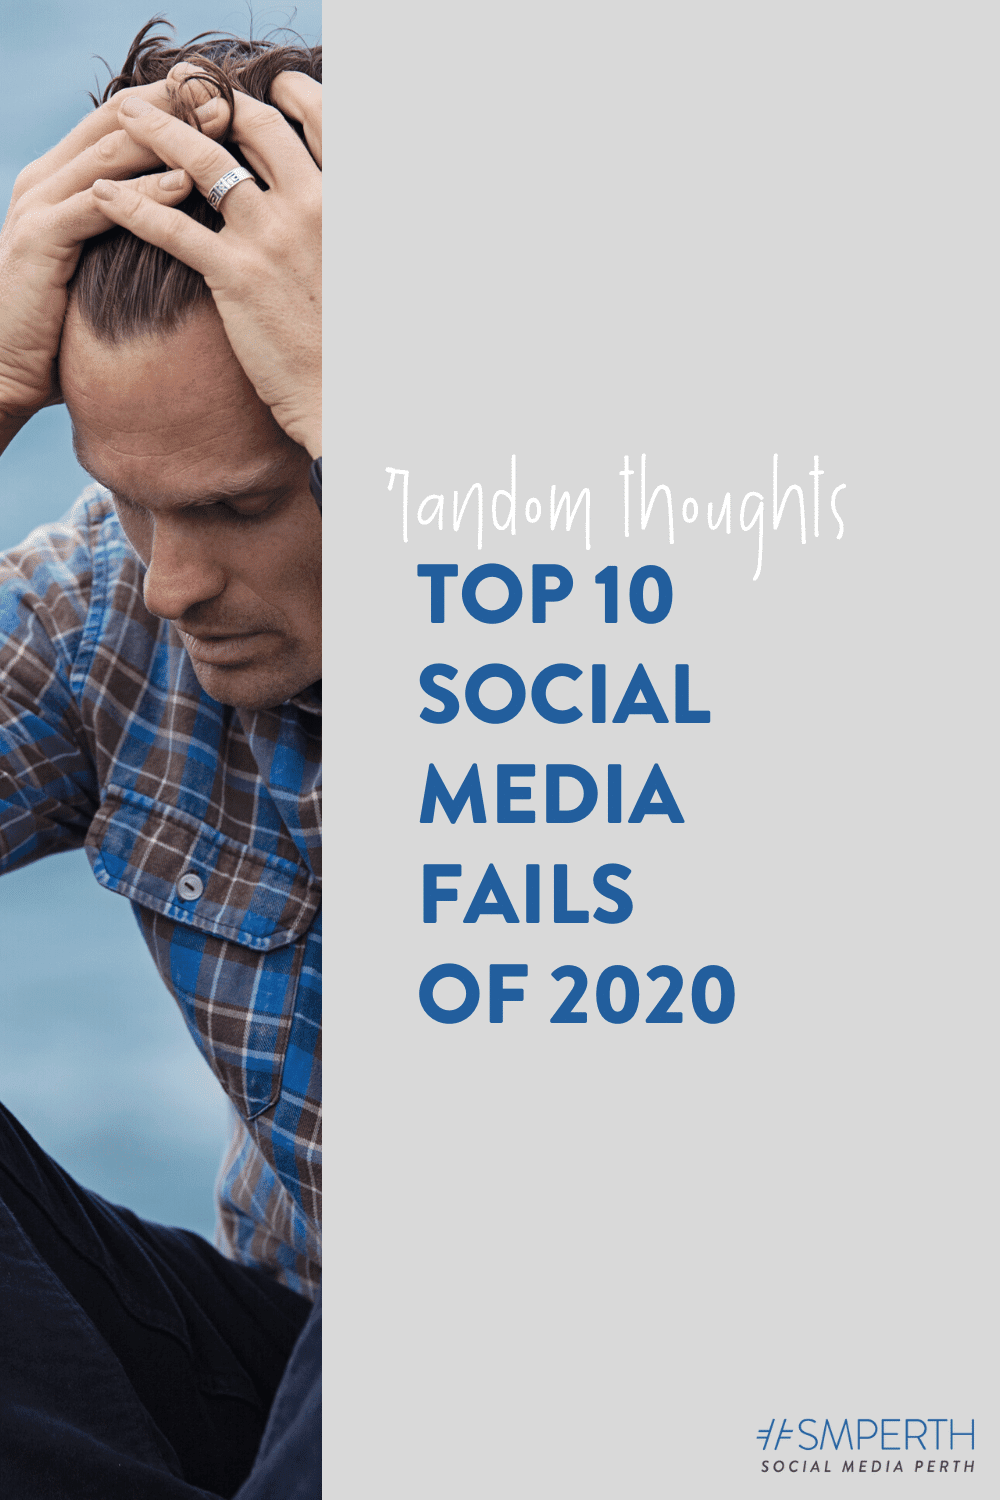 Top 10 Social Media Fails of 2020